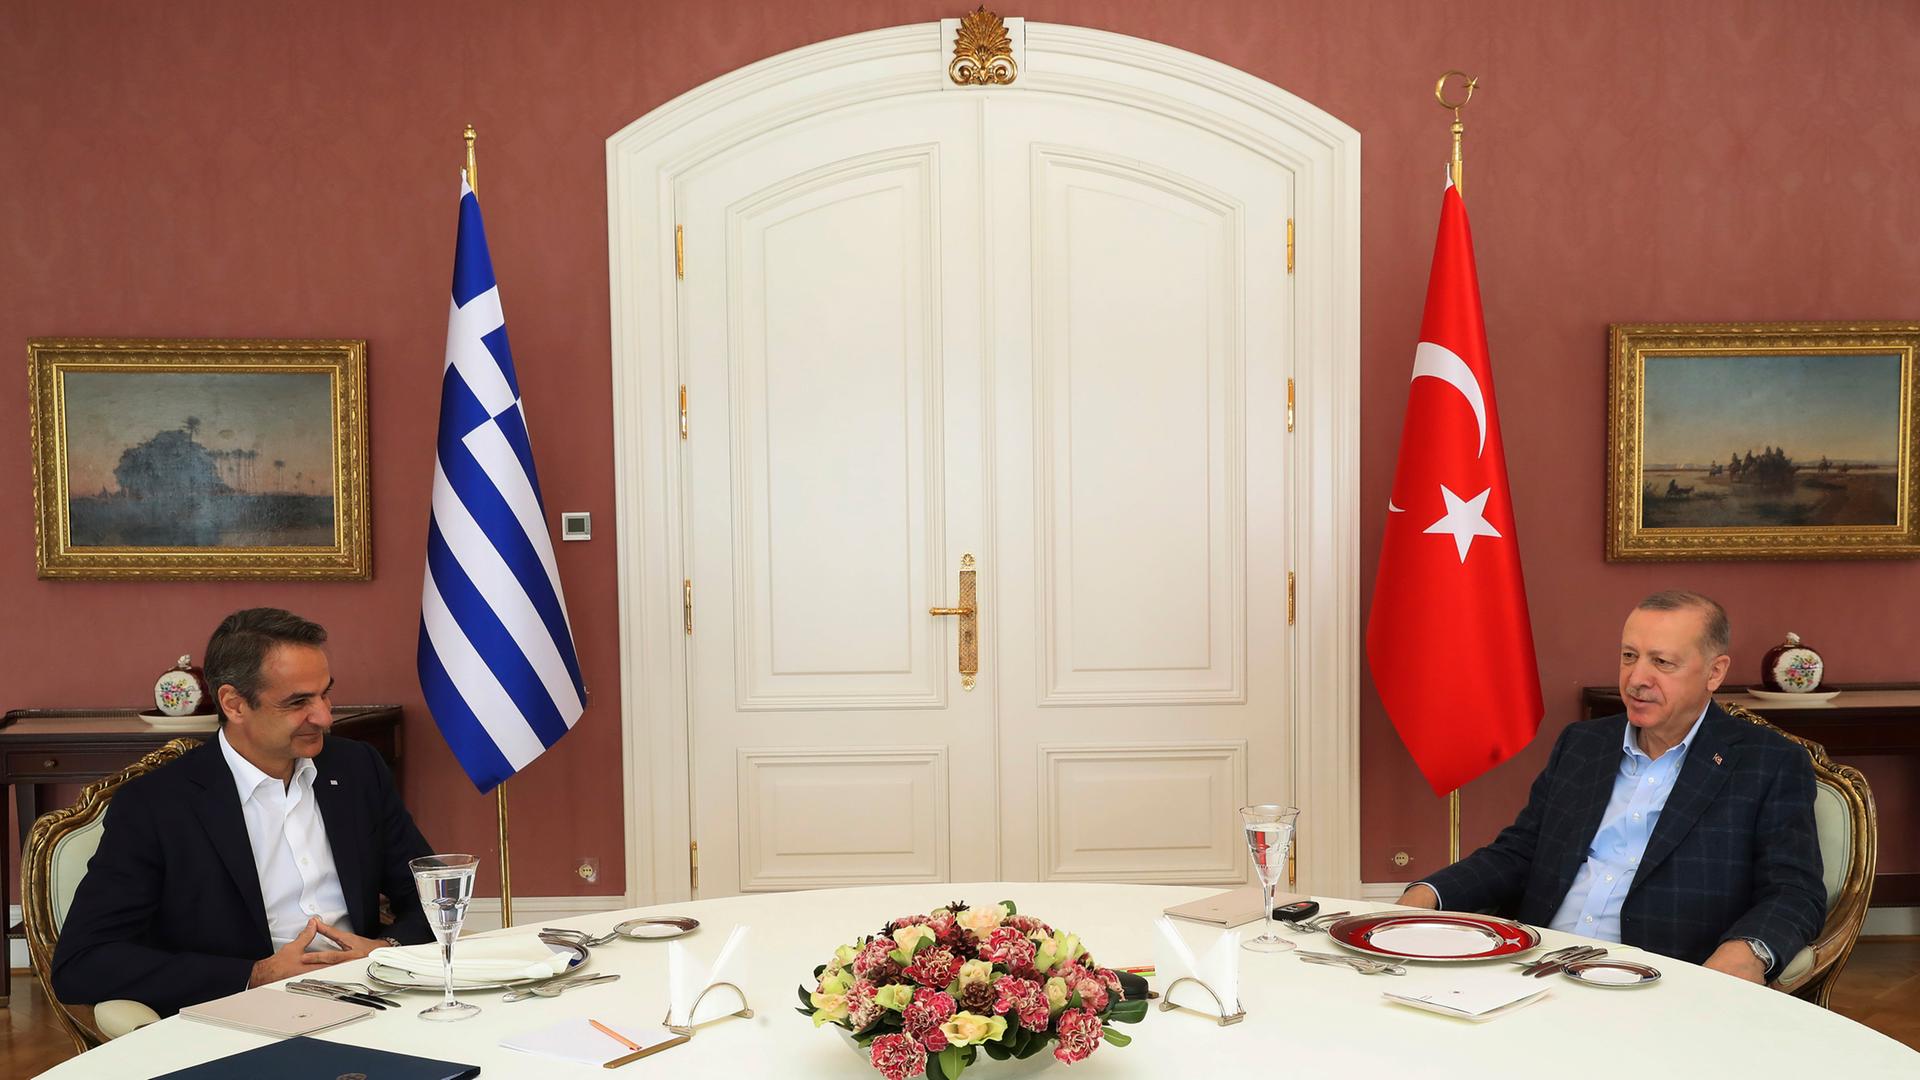 Türkei und Griechenland - Was hinter dem Streit um Ägäis-Inseln steckt